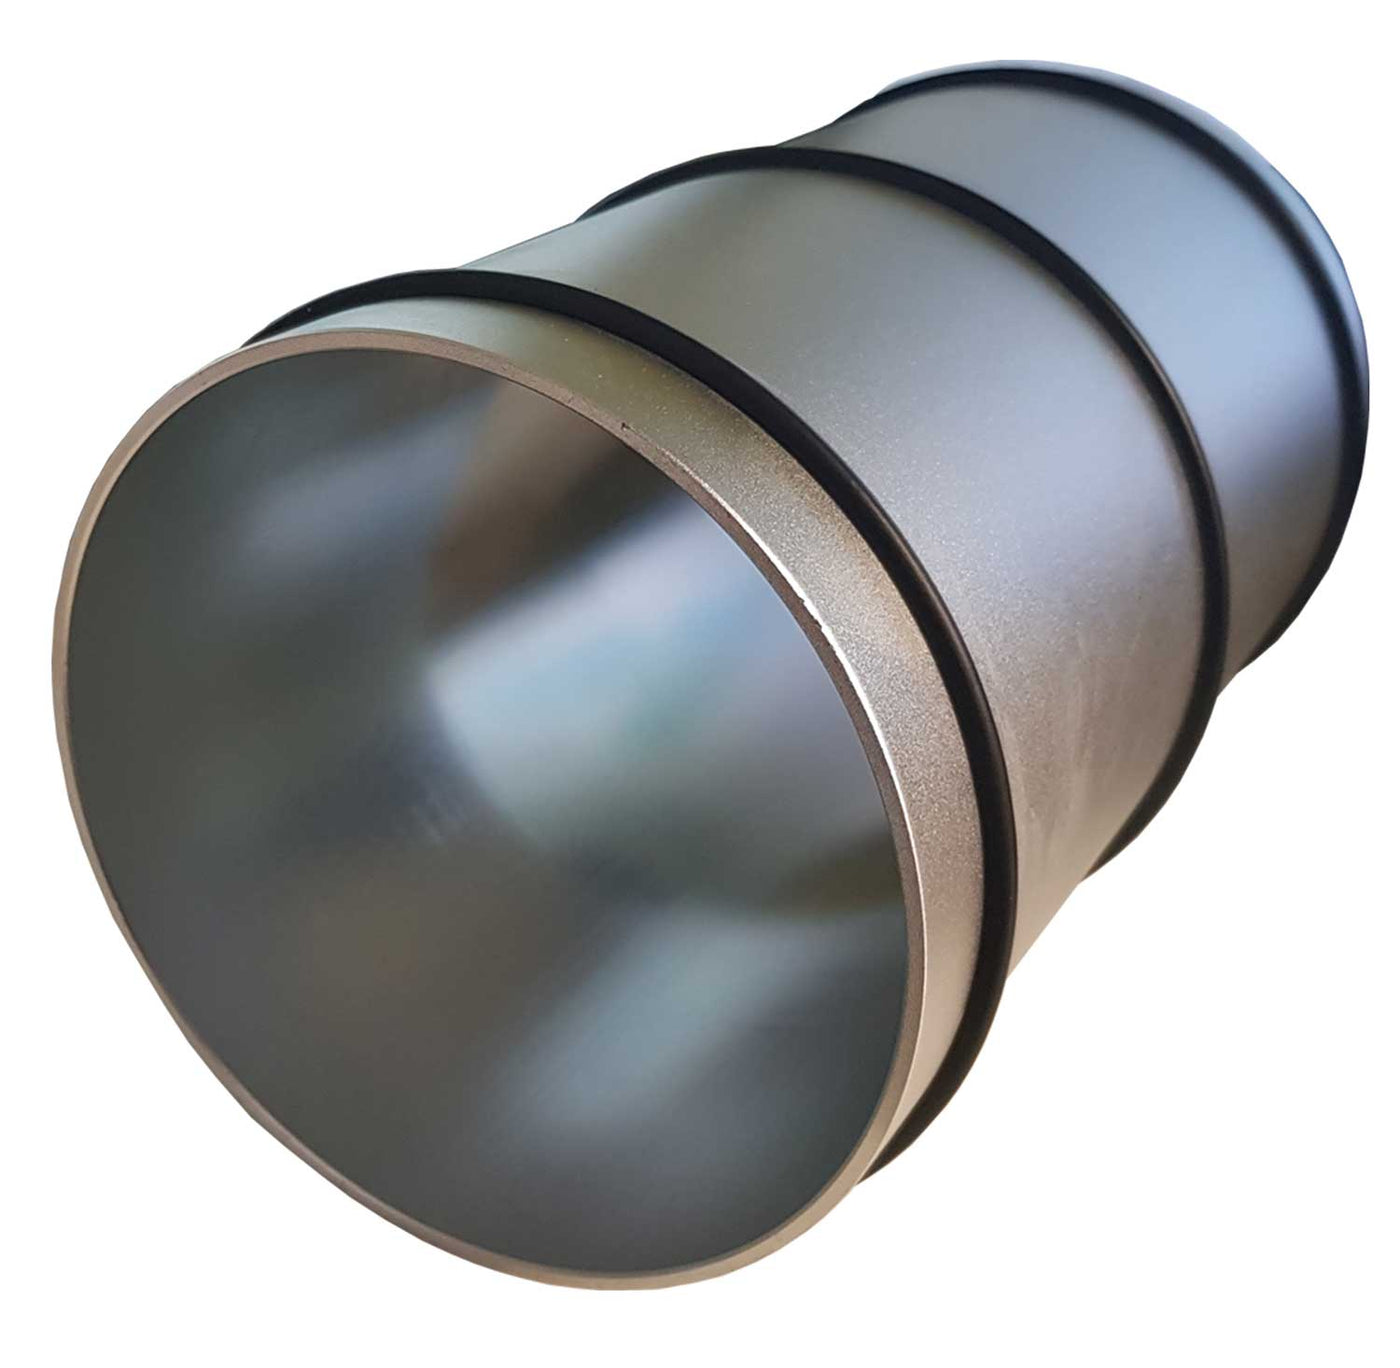 Rolla aluminum roller - Aluminum - diameter 15cm - Complete with three rubber rings